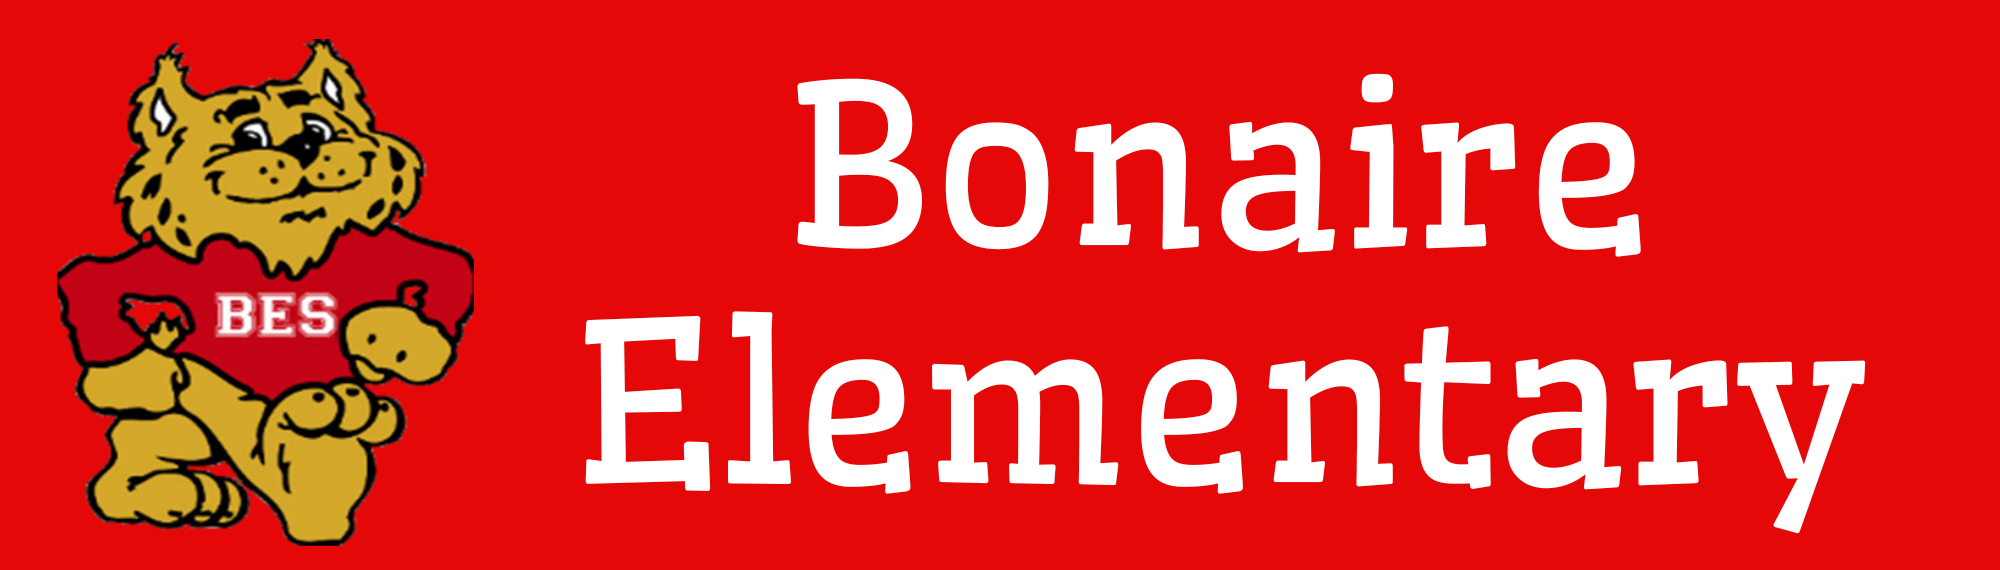 Bonaire Elementary